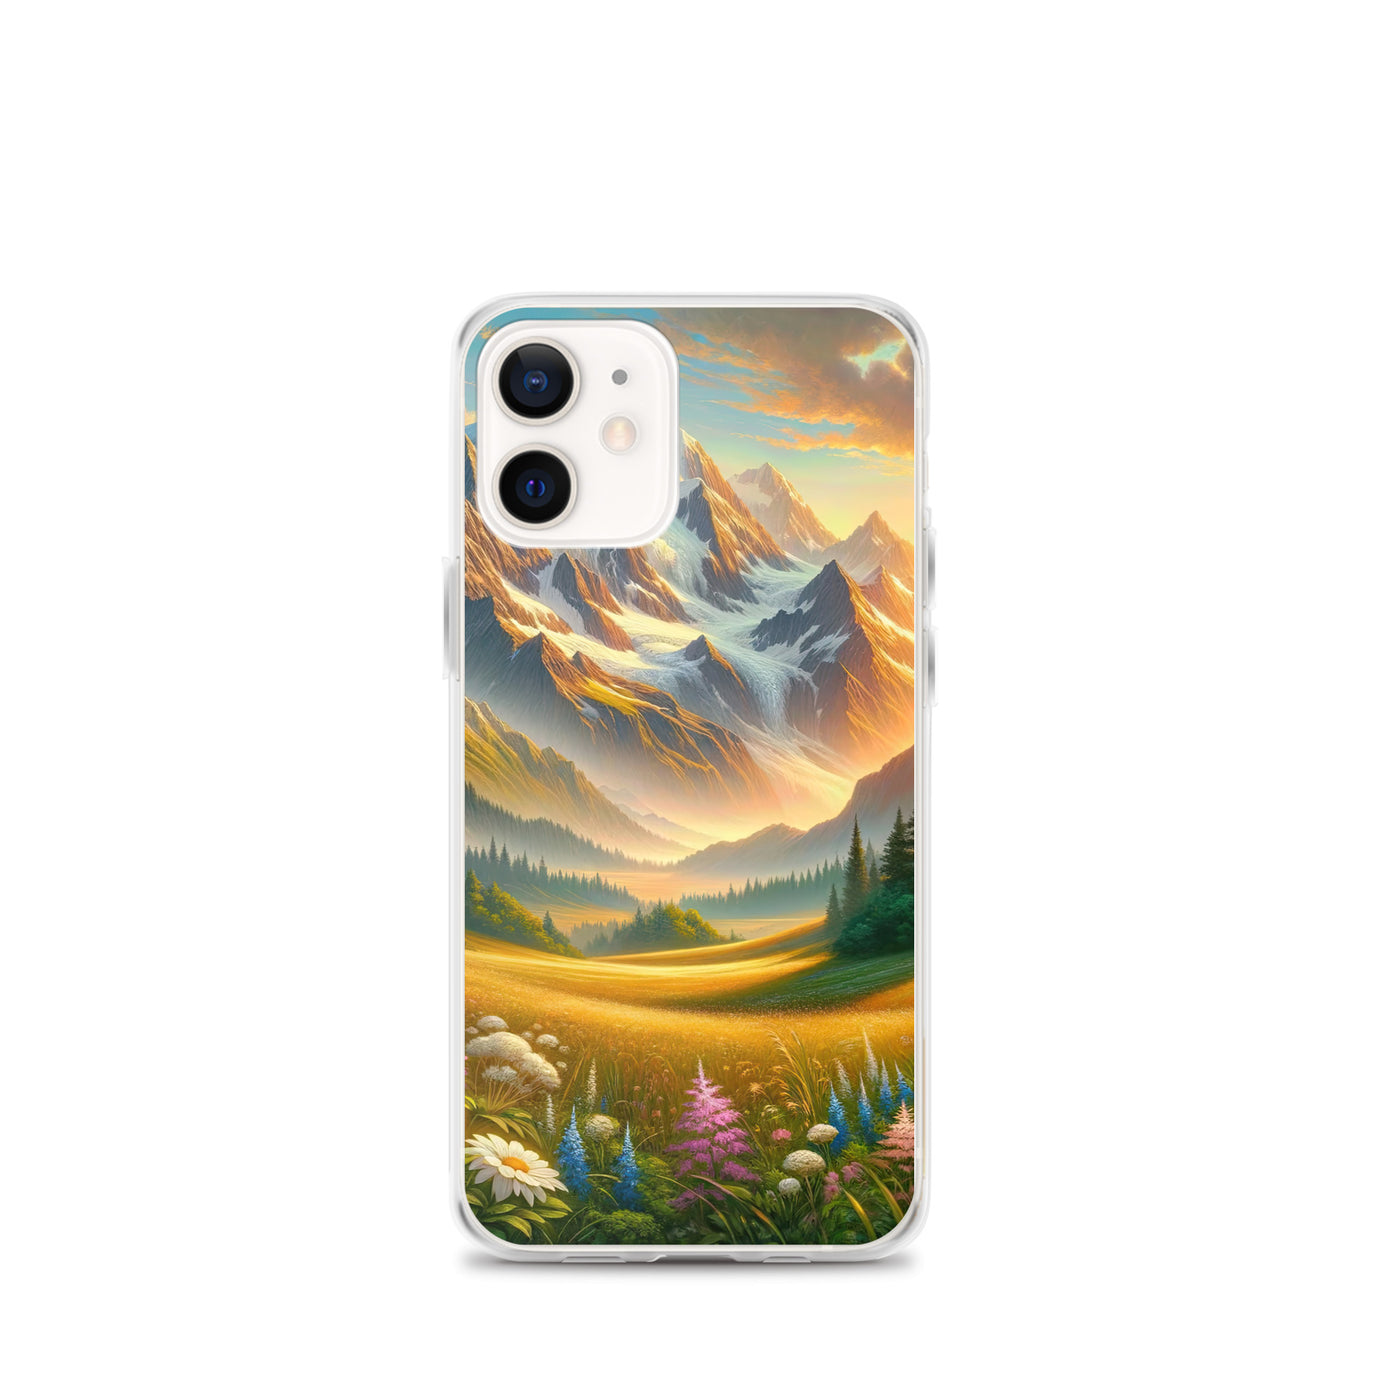 Heitere Alpenschönheit: Schneeberge und Wildblumenwiesen - iPhone Schutzhülle (durchsichtig) berge xxx yyy zzz iPhone 12 mini